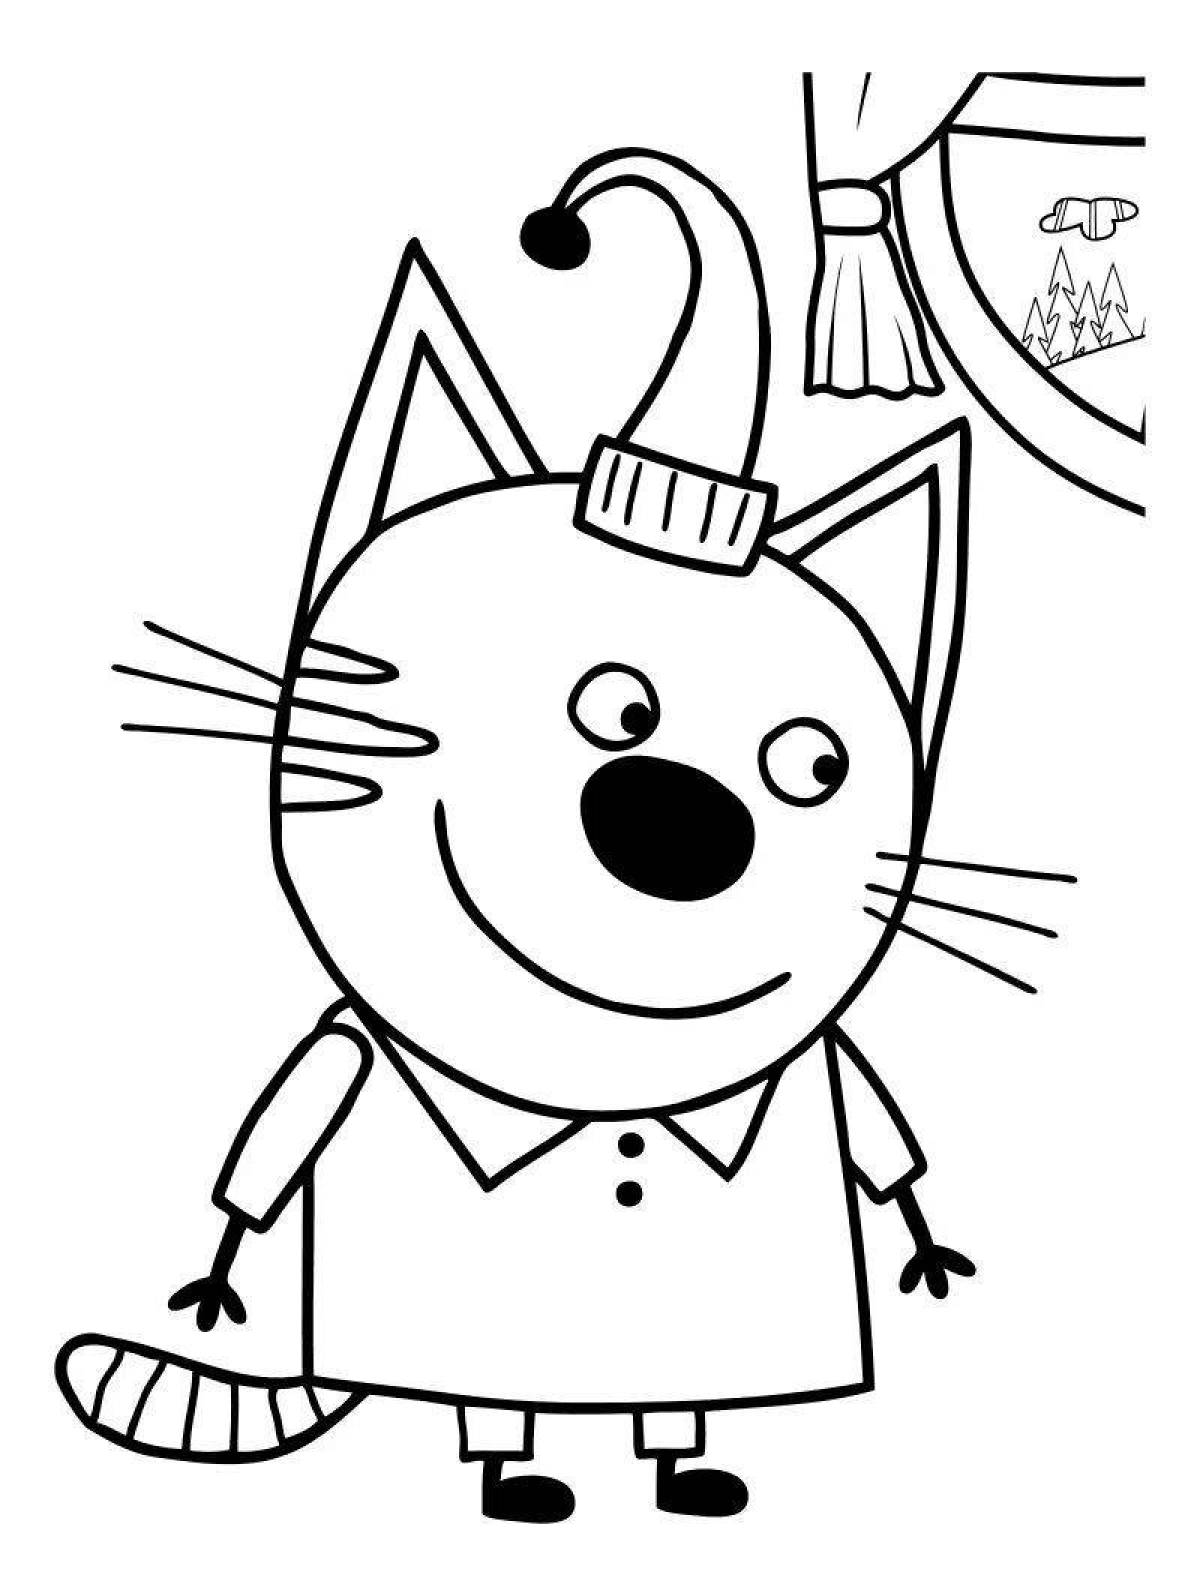 Увлекательная раскраска 3 кота для детей